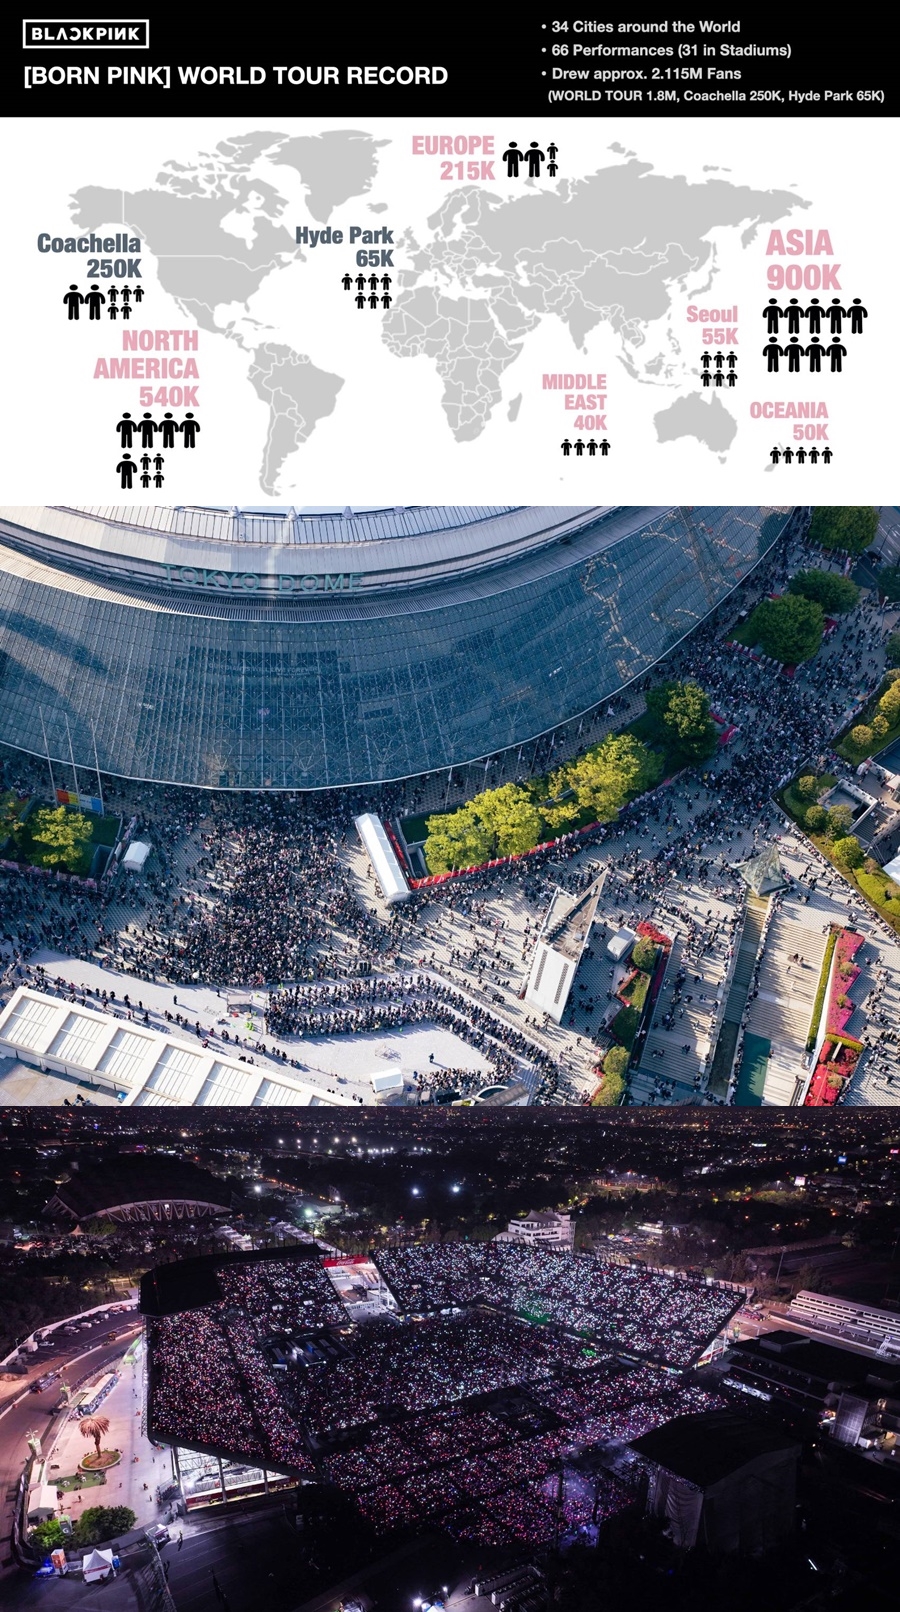 블랙핑크, 단순한 공연 넘어 '세계인의 축제'로 완성된 'BORN PINK' 투어